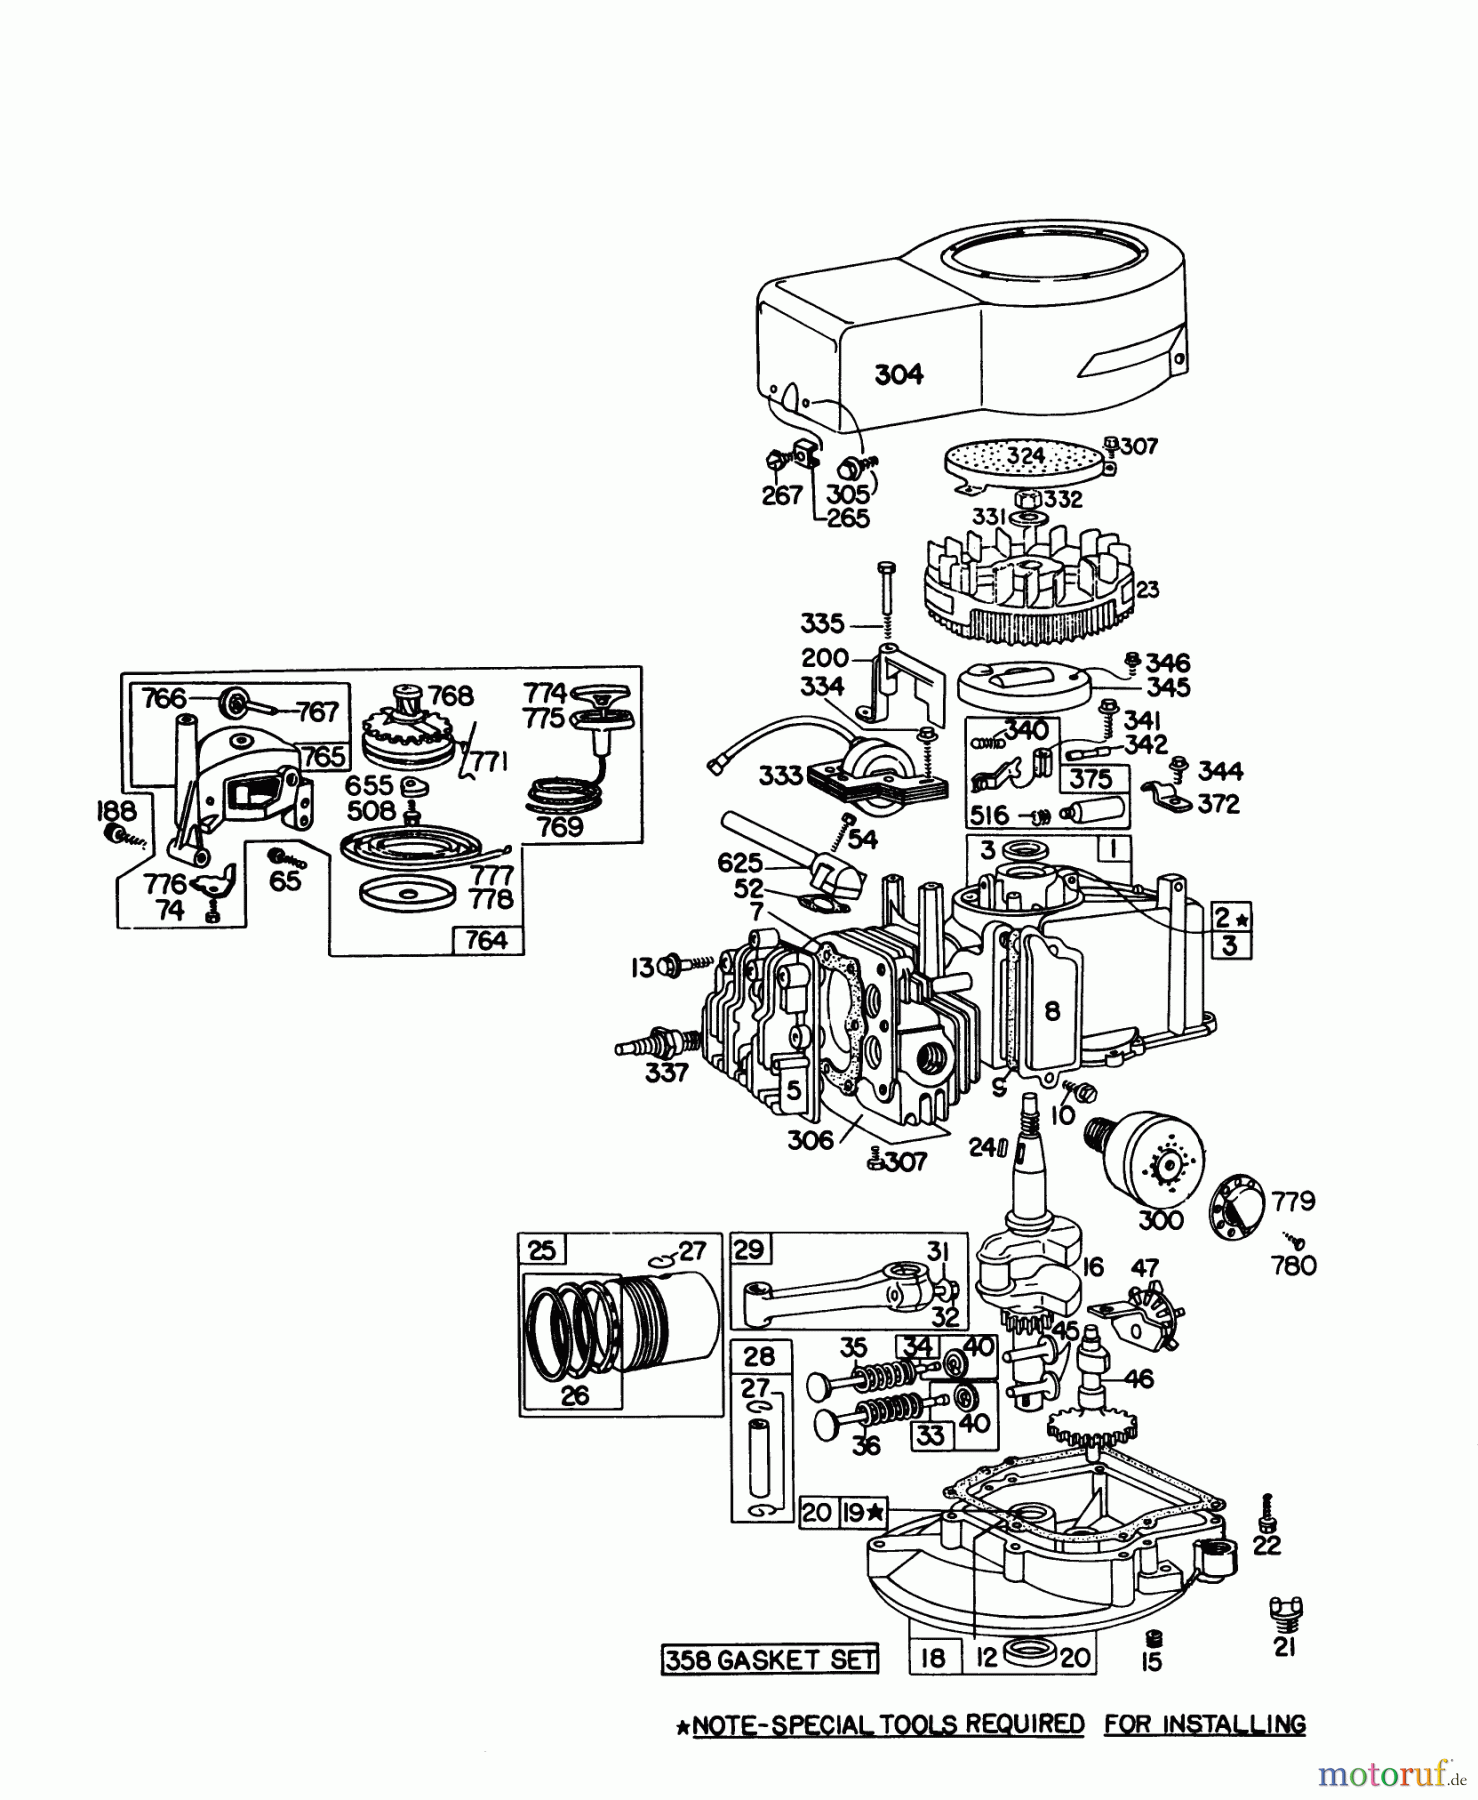  Toro Neu Mowers, Walk-Behind Seite 1 16287 - Toro Whirlwind II Lawnmower, 1978 (8000001-8999999) ENGINE BRIGGS & STRATTON MODEL 92908-1895-01 FOR 21